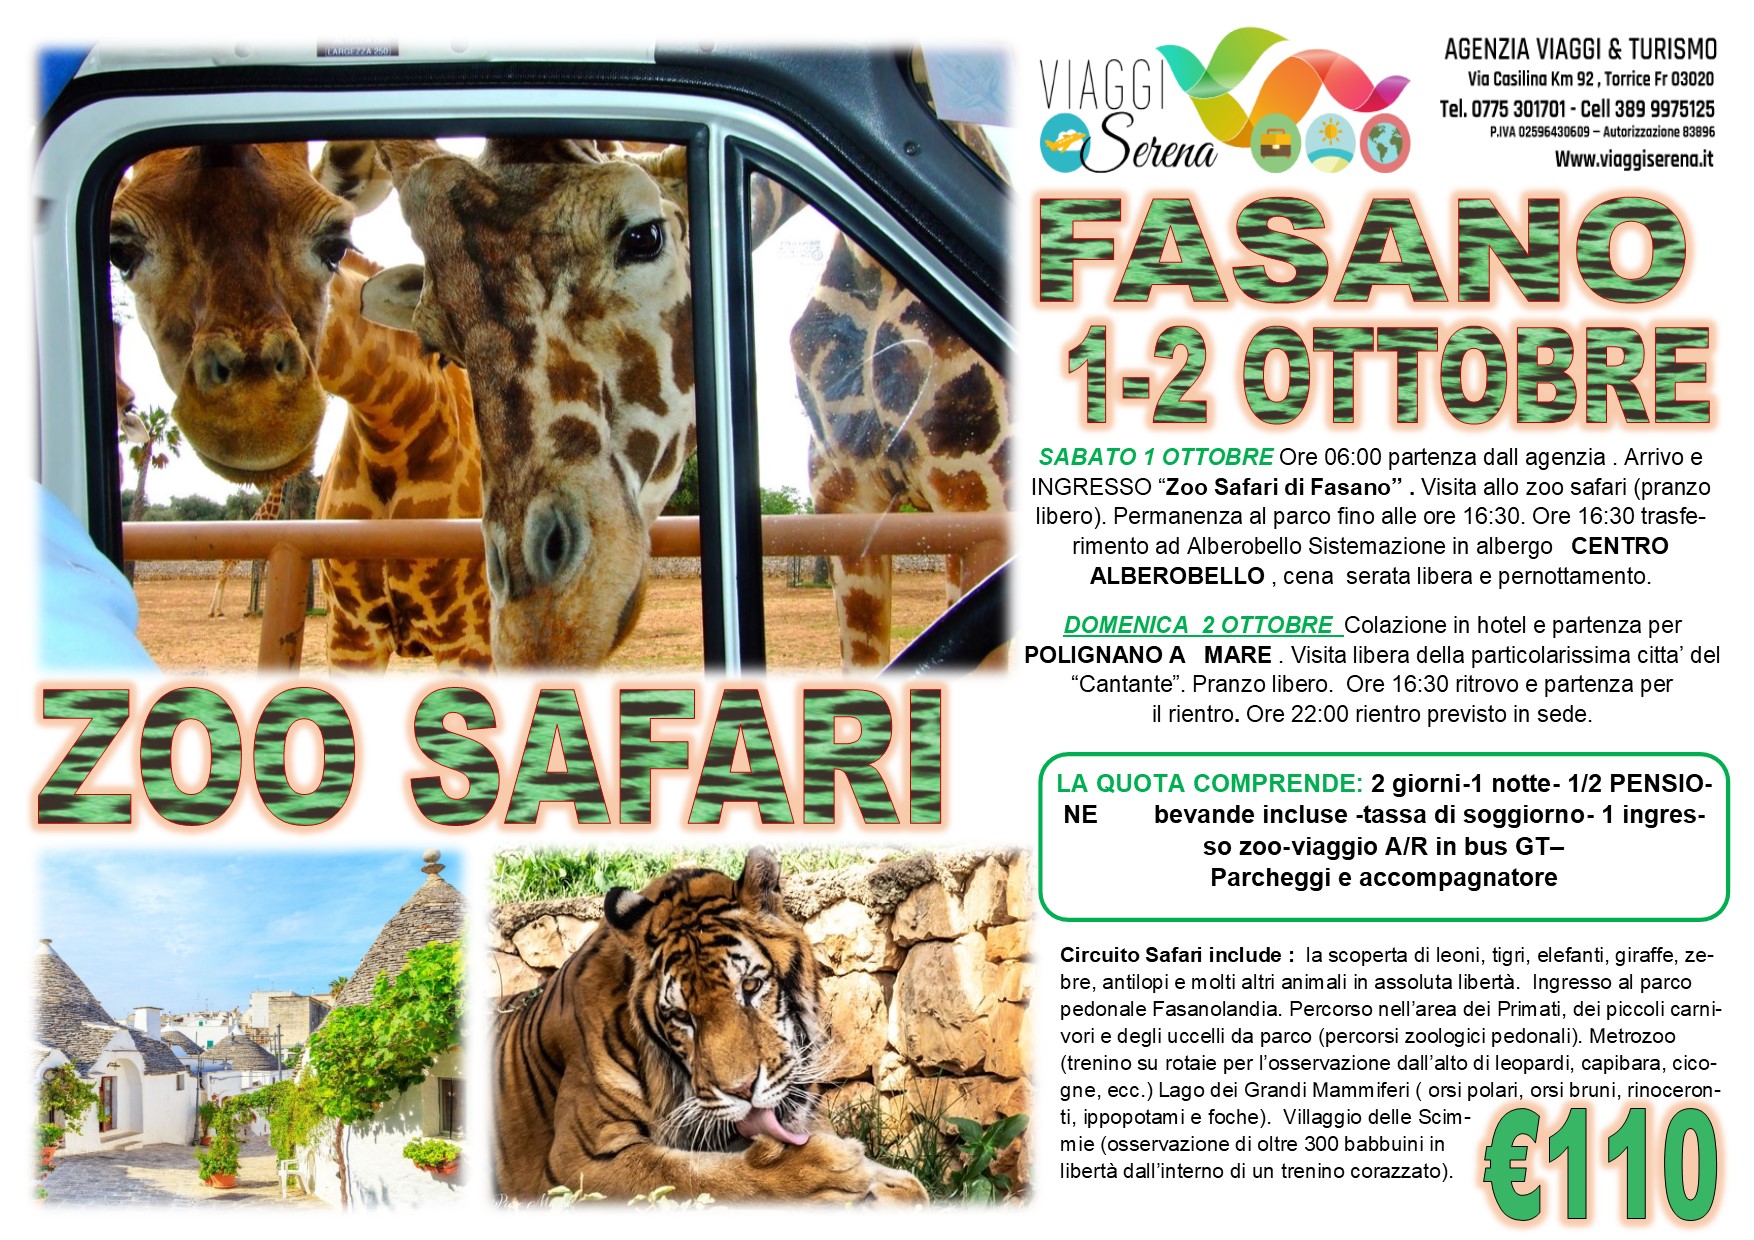 Viaggi di Gruppo: Zoo Safari Fasano, Alberobello & Polignano a mare  1-2 Ottobre € 110,00